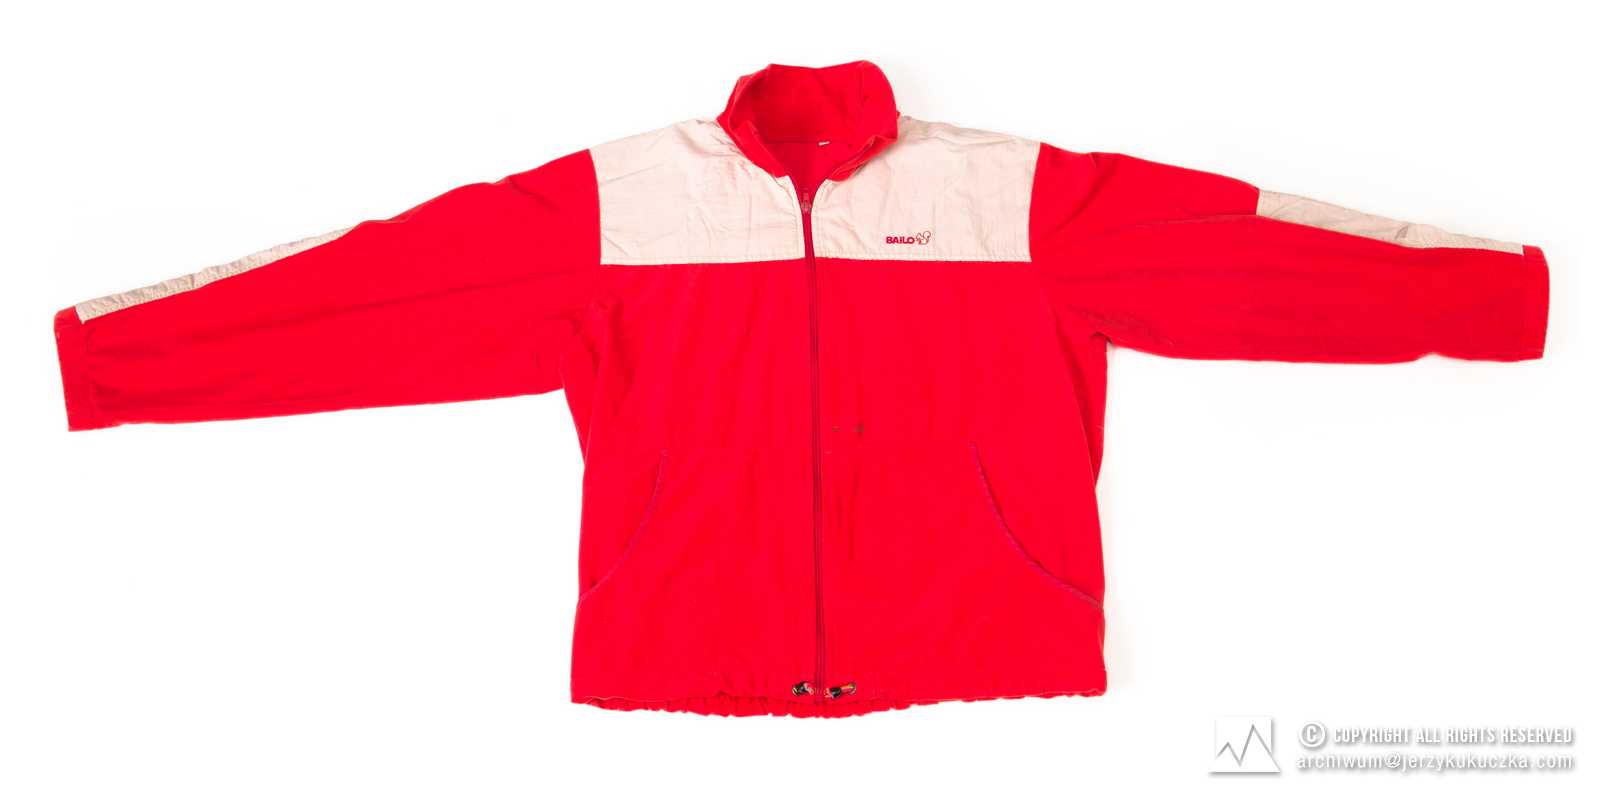 Bluza firmy Bailo. Czerwona z szarymi wstawkami, zapinana na całej długości. Lata 70-80 XX w.